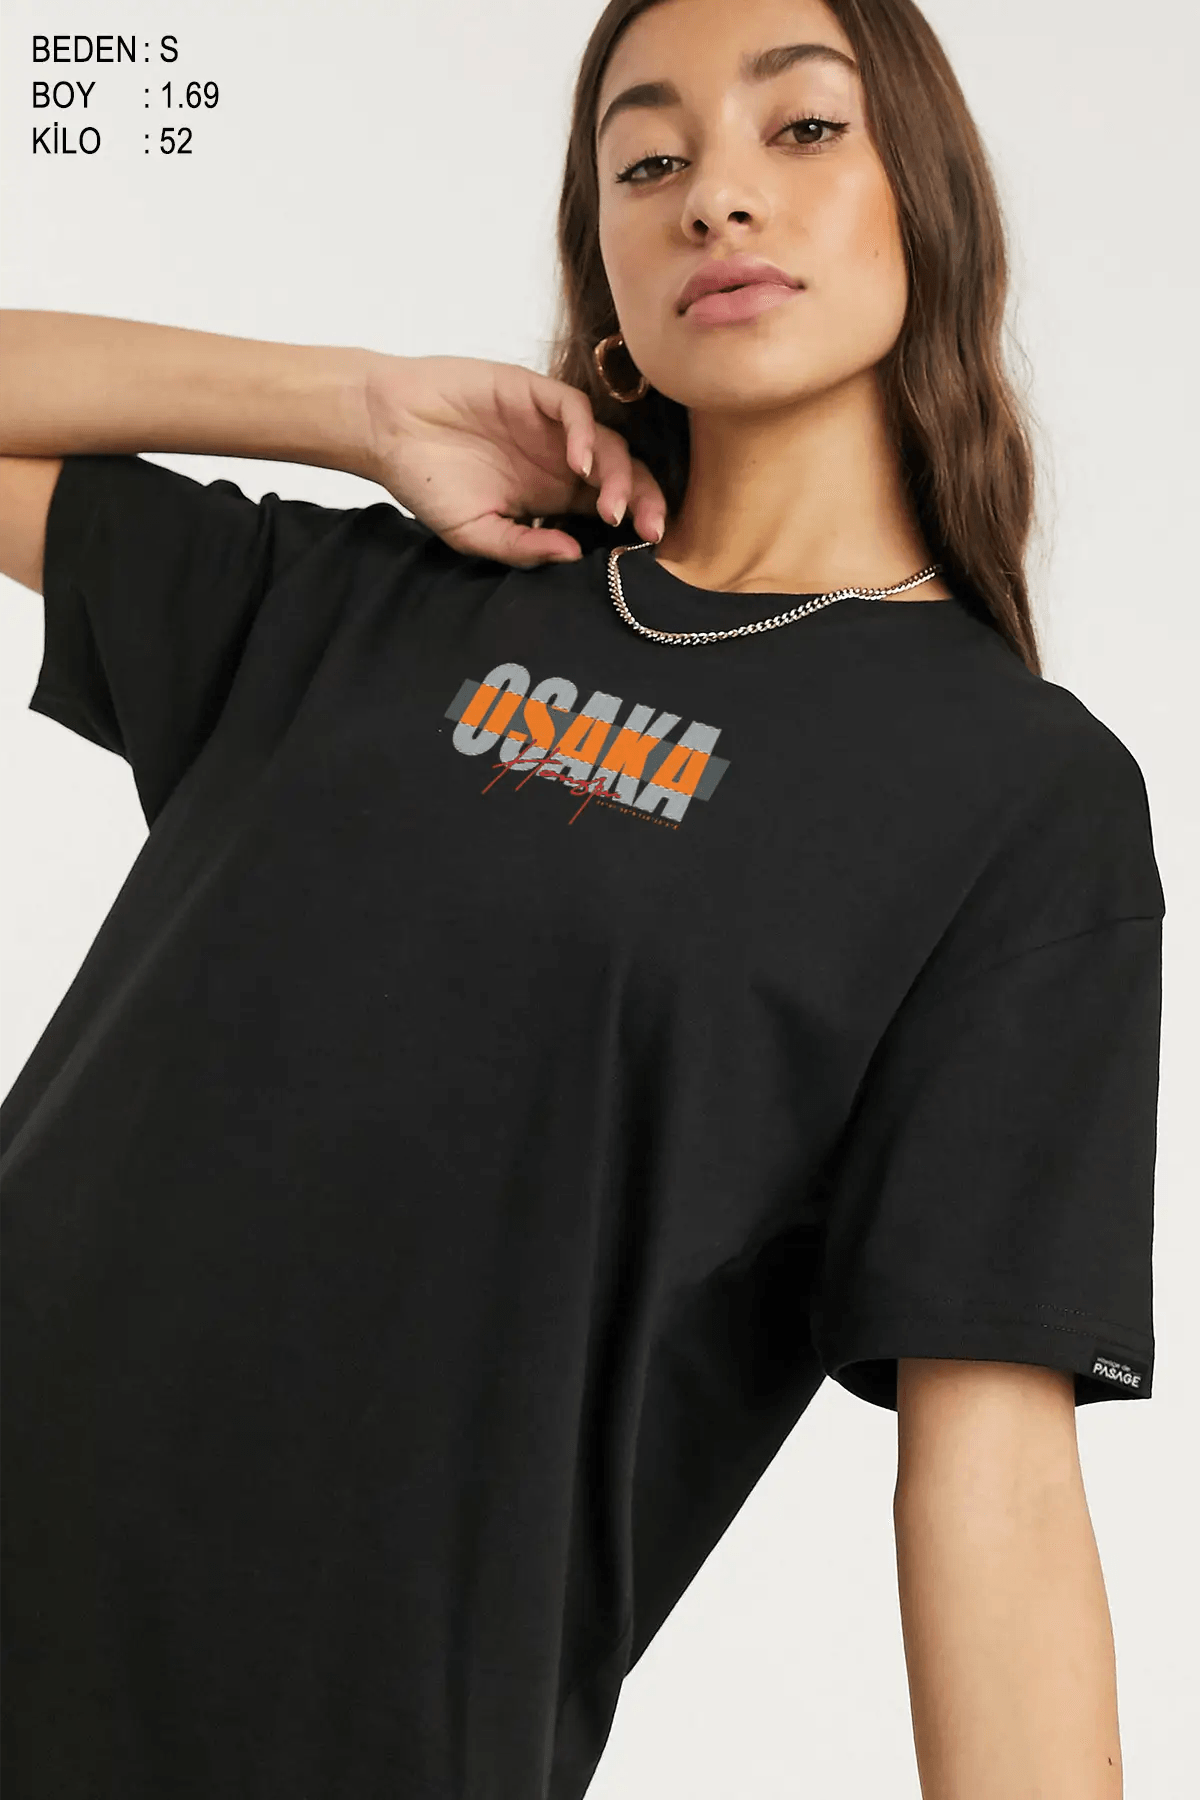 Osaka Oversize Kadın Tişört - PΛSΛGE